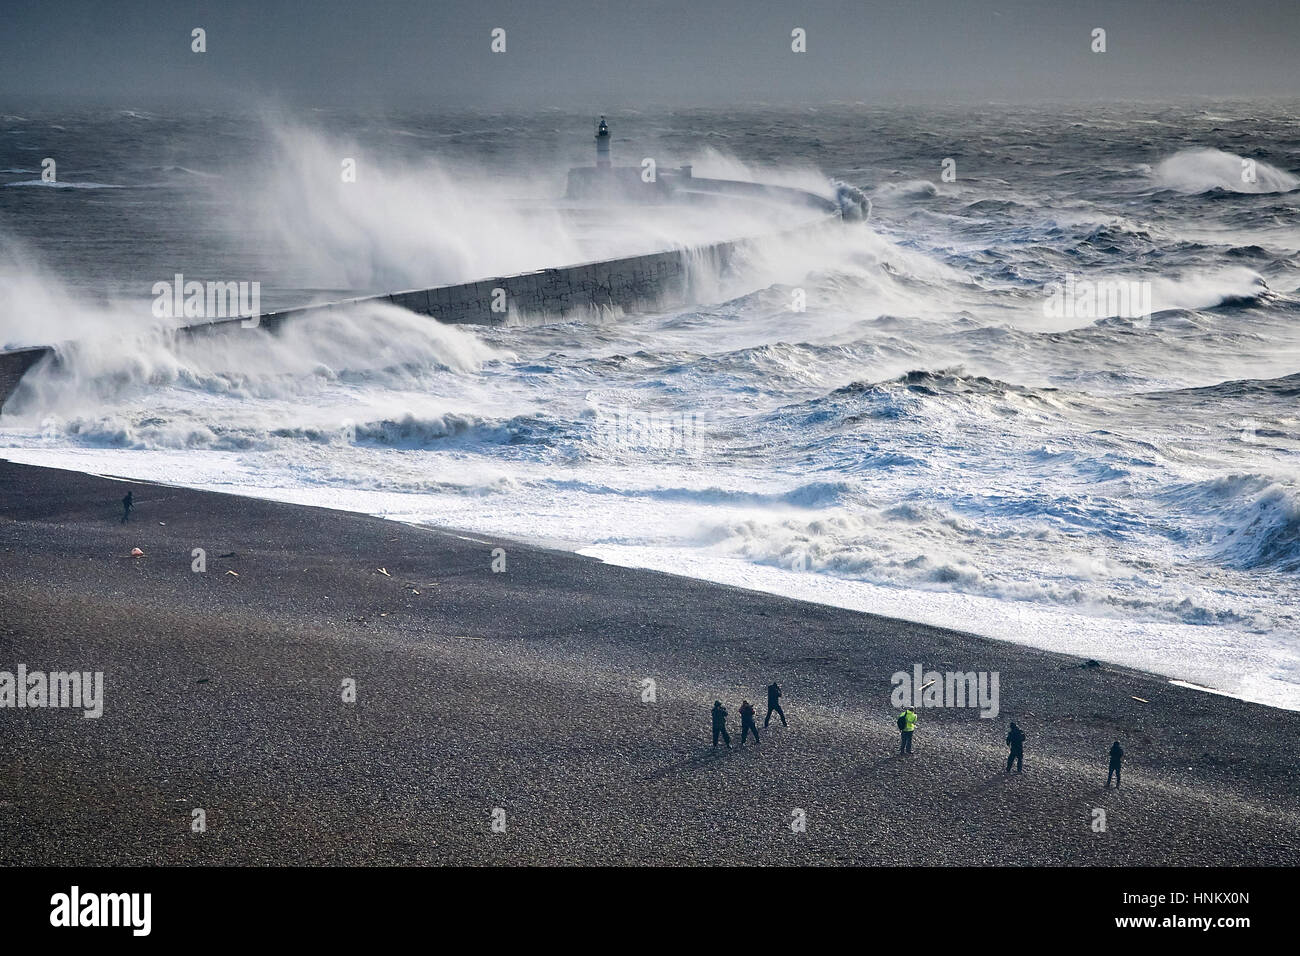 Regarder les gens d'une plage immense comme les vagues déferlent sur un mur près de la mer au cours d'une tempête d'un phare Banque D'Images